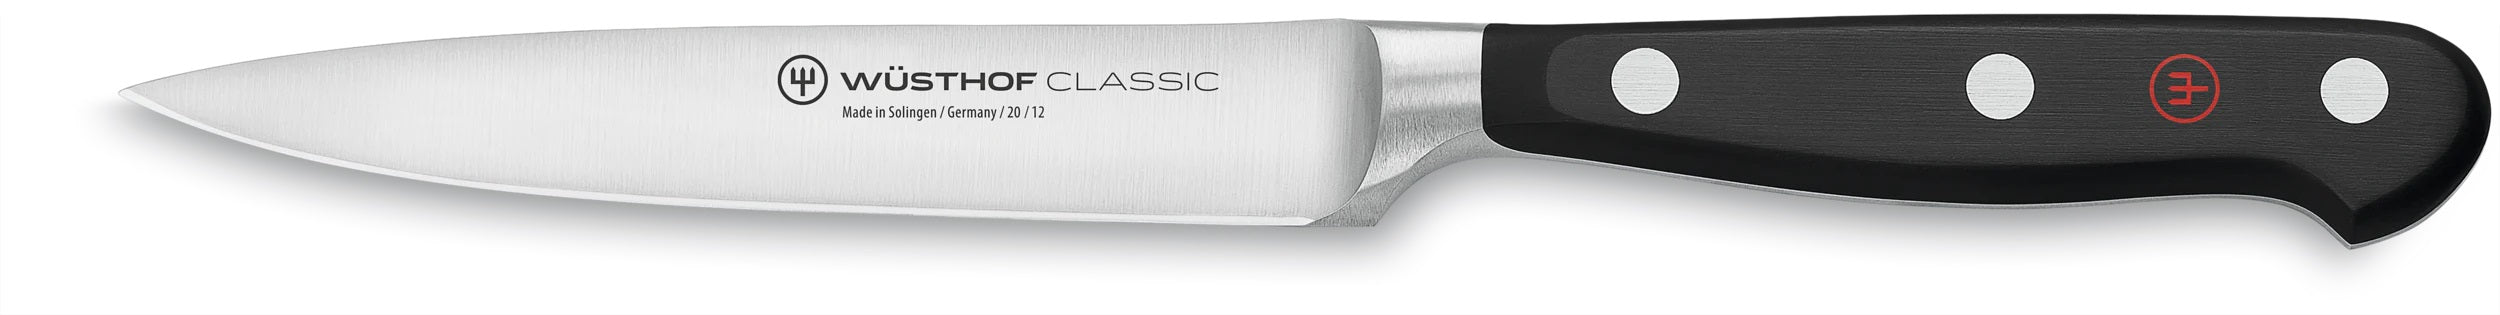 Wusthof Classic 4.5" Utility Knife 1040100412